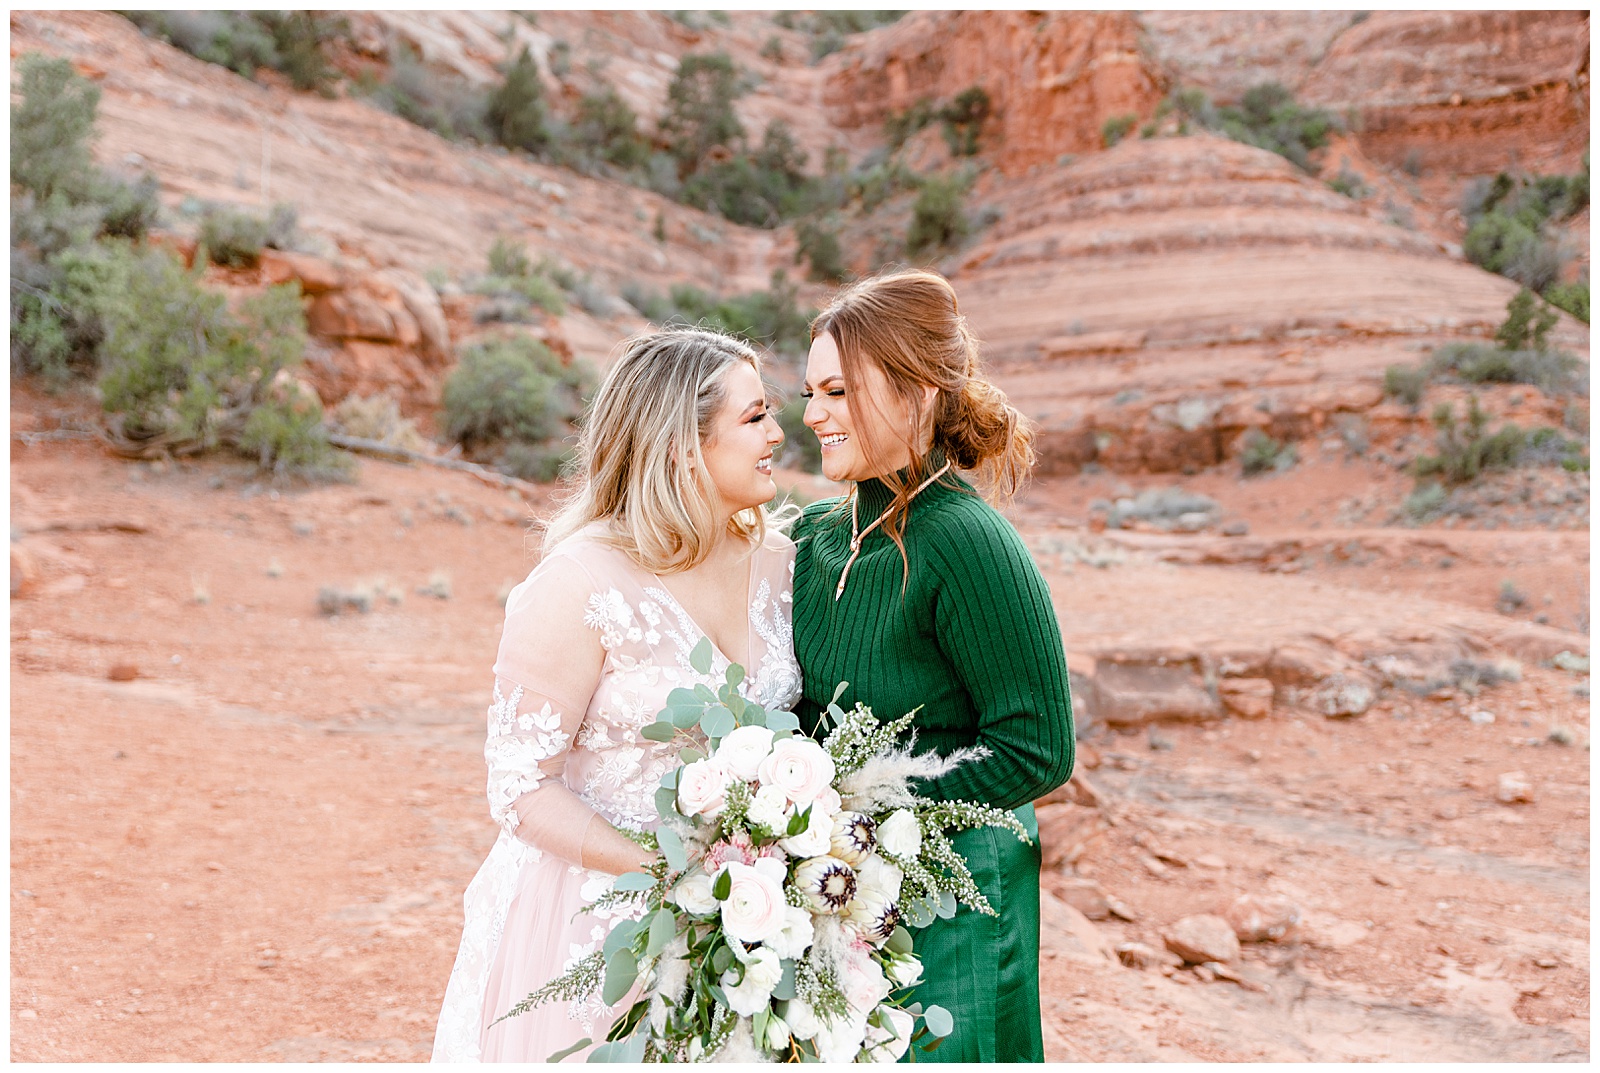 Sedona Arizona wedding photography stephen and melissa 